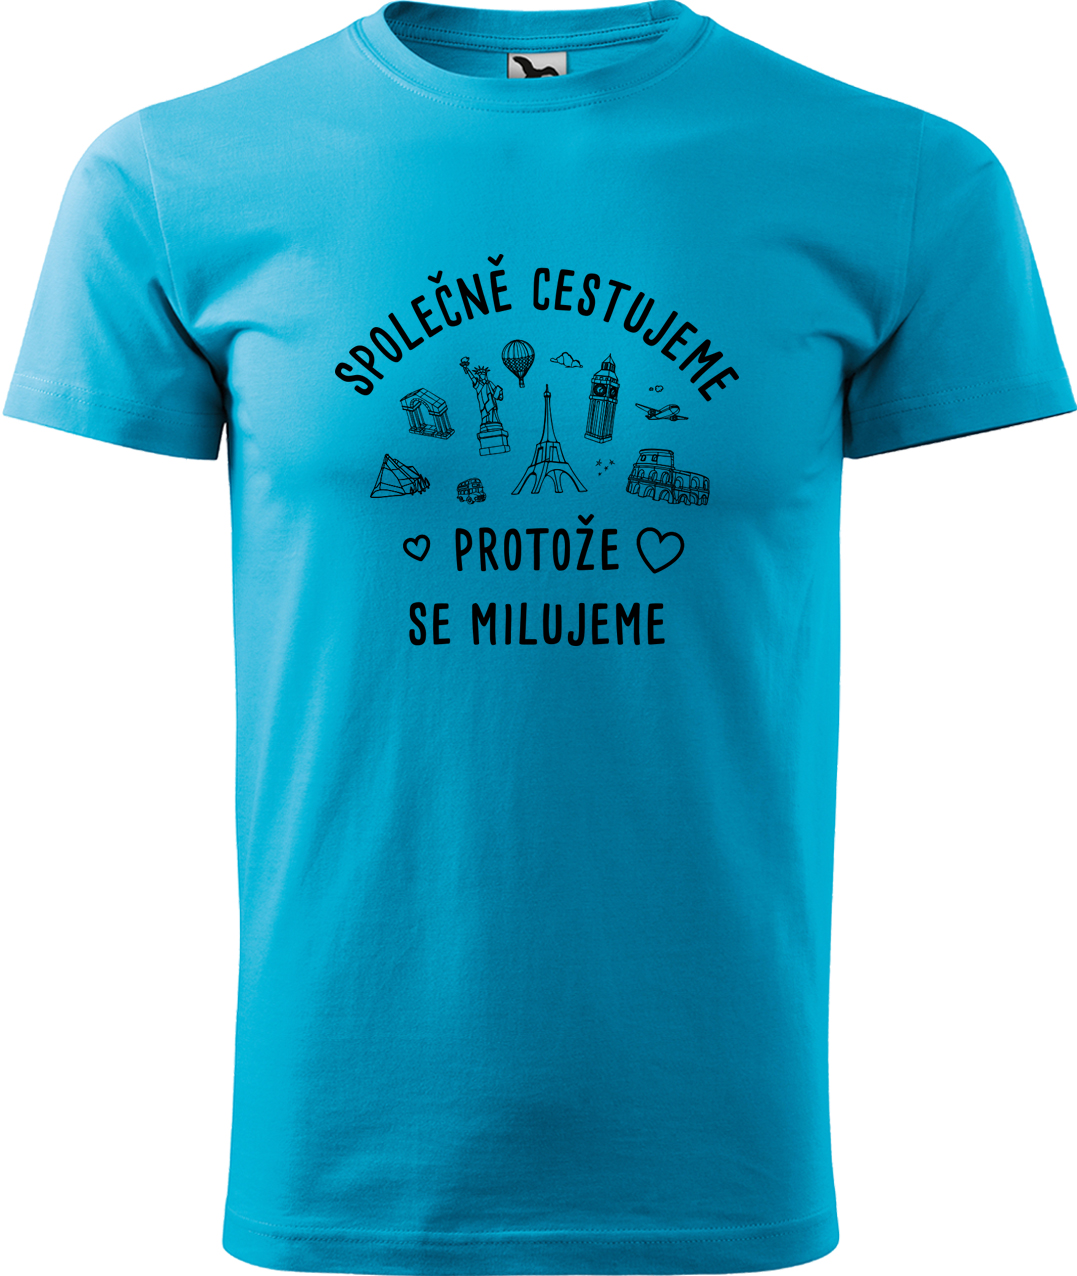 Pánské cestovatelské tričko - Společně cestujeme protože se milujeme Velikost: 4XL, Barva: Tyrkysová (44), Střih: pánský